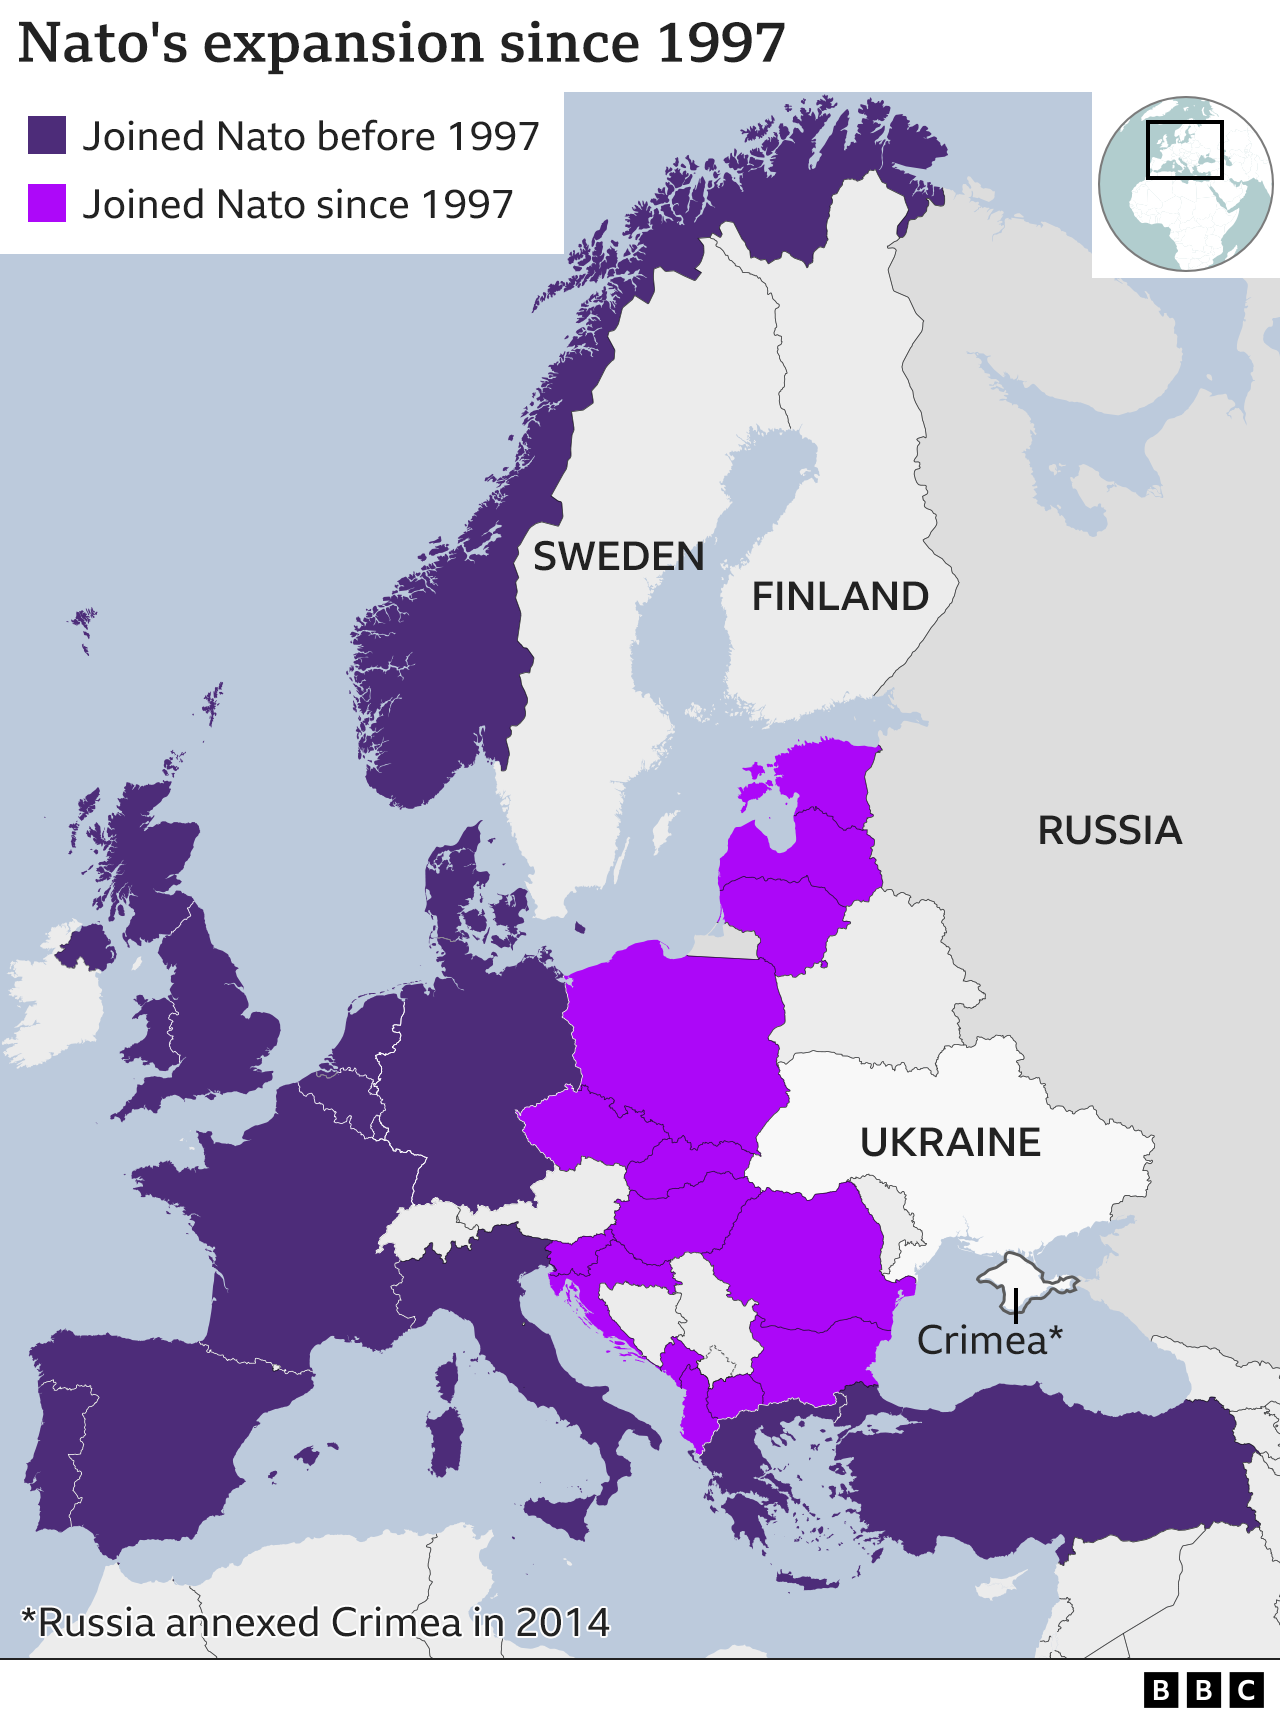 Карта членов НАТО и время их вступления